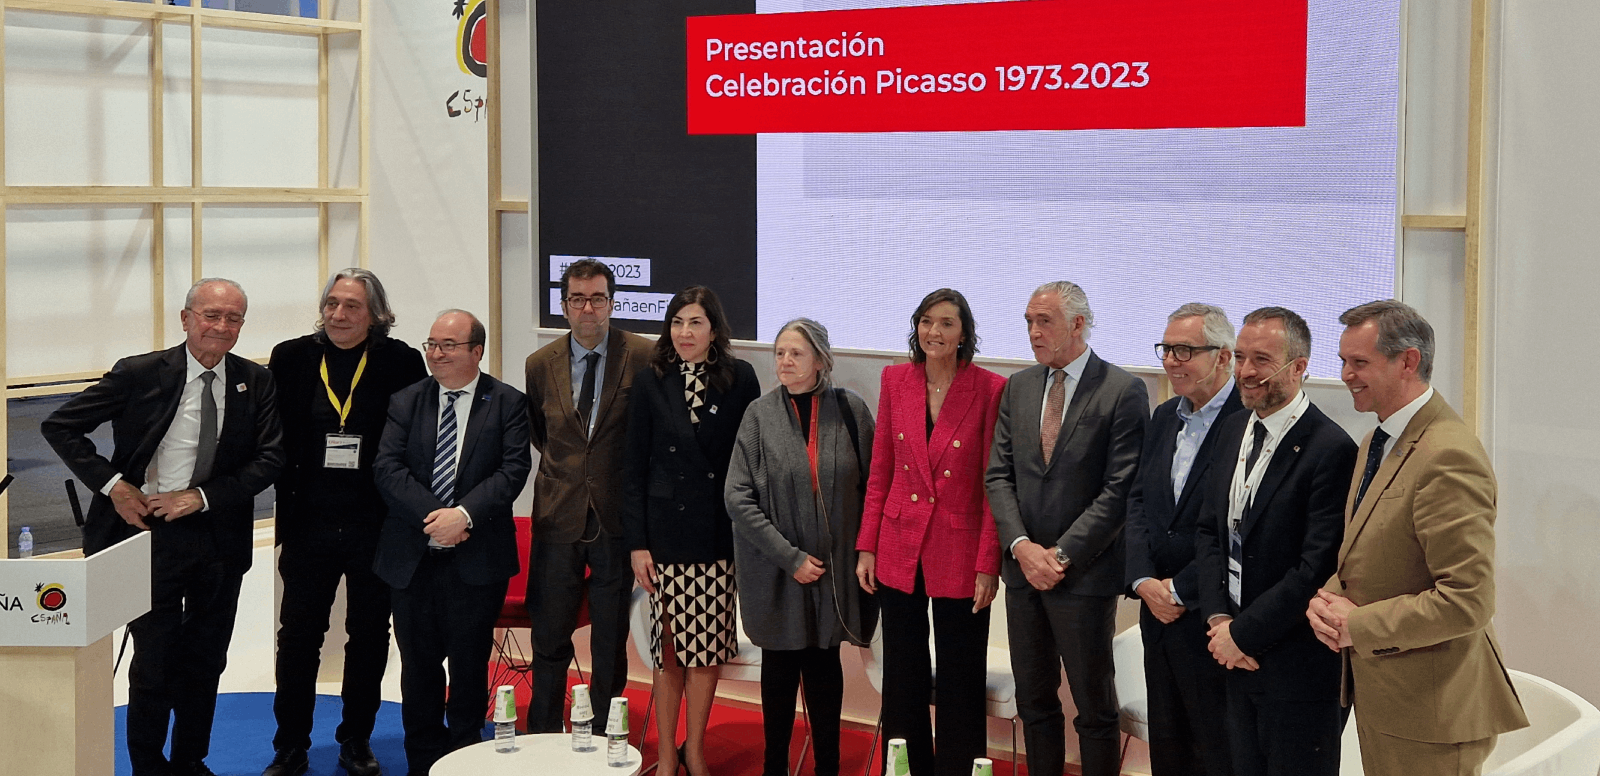 Presentación en FITUR de la Celebración Picasso con los ministros y directores de museos